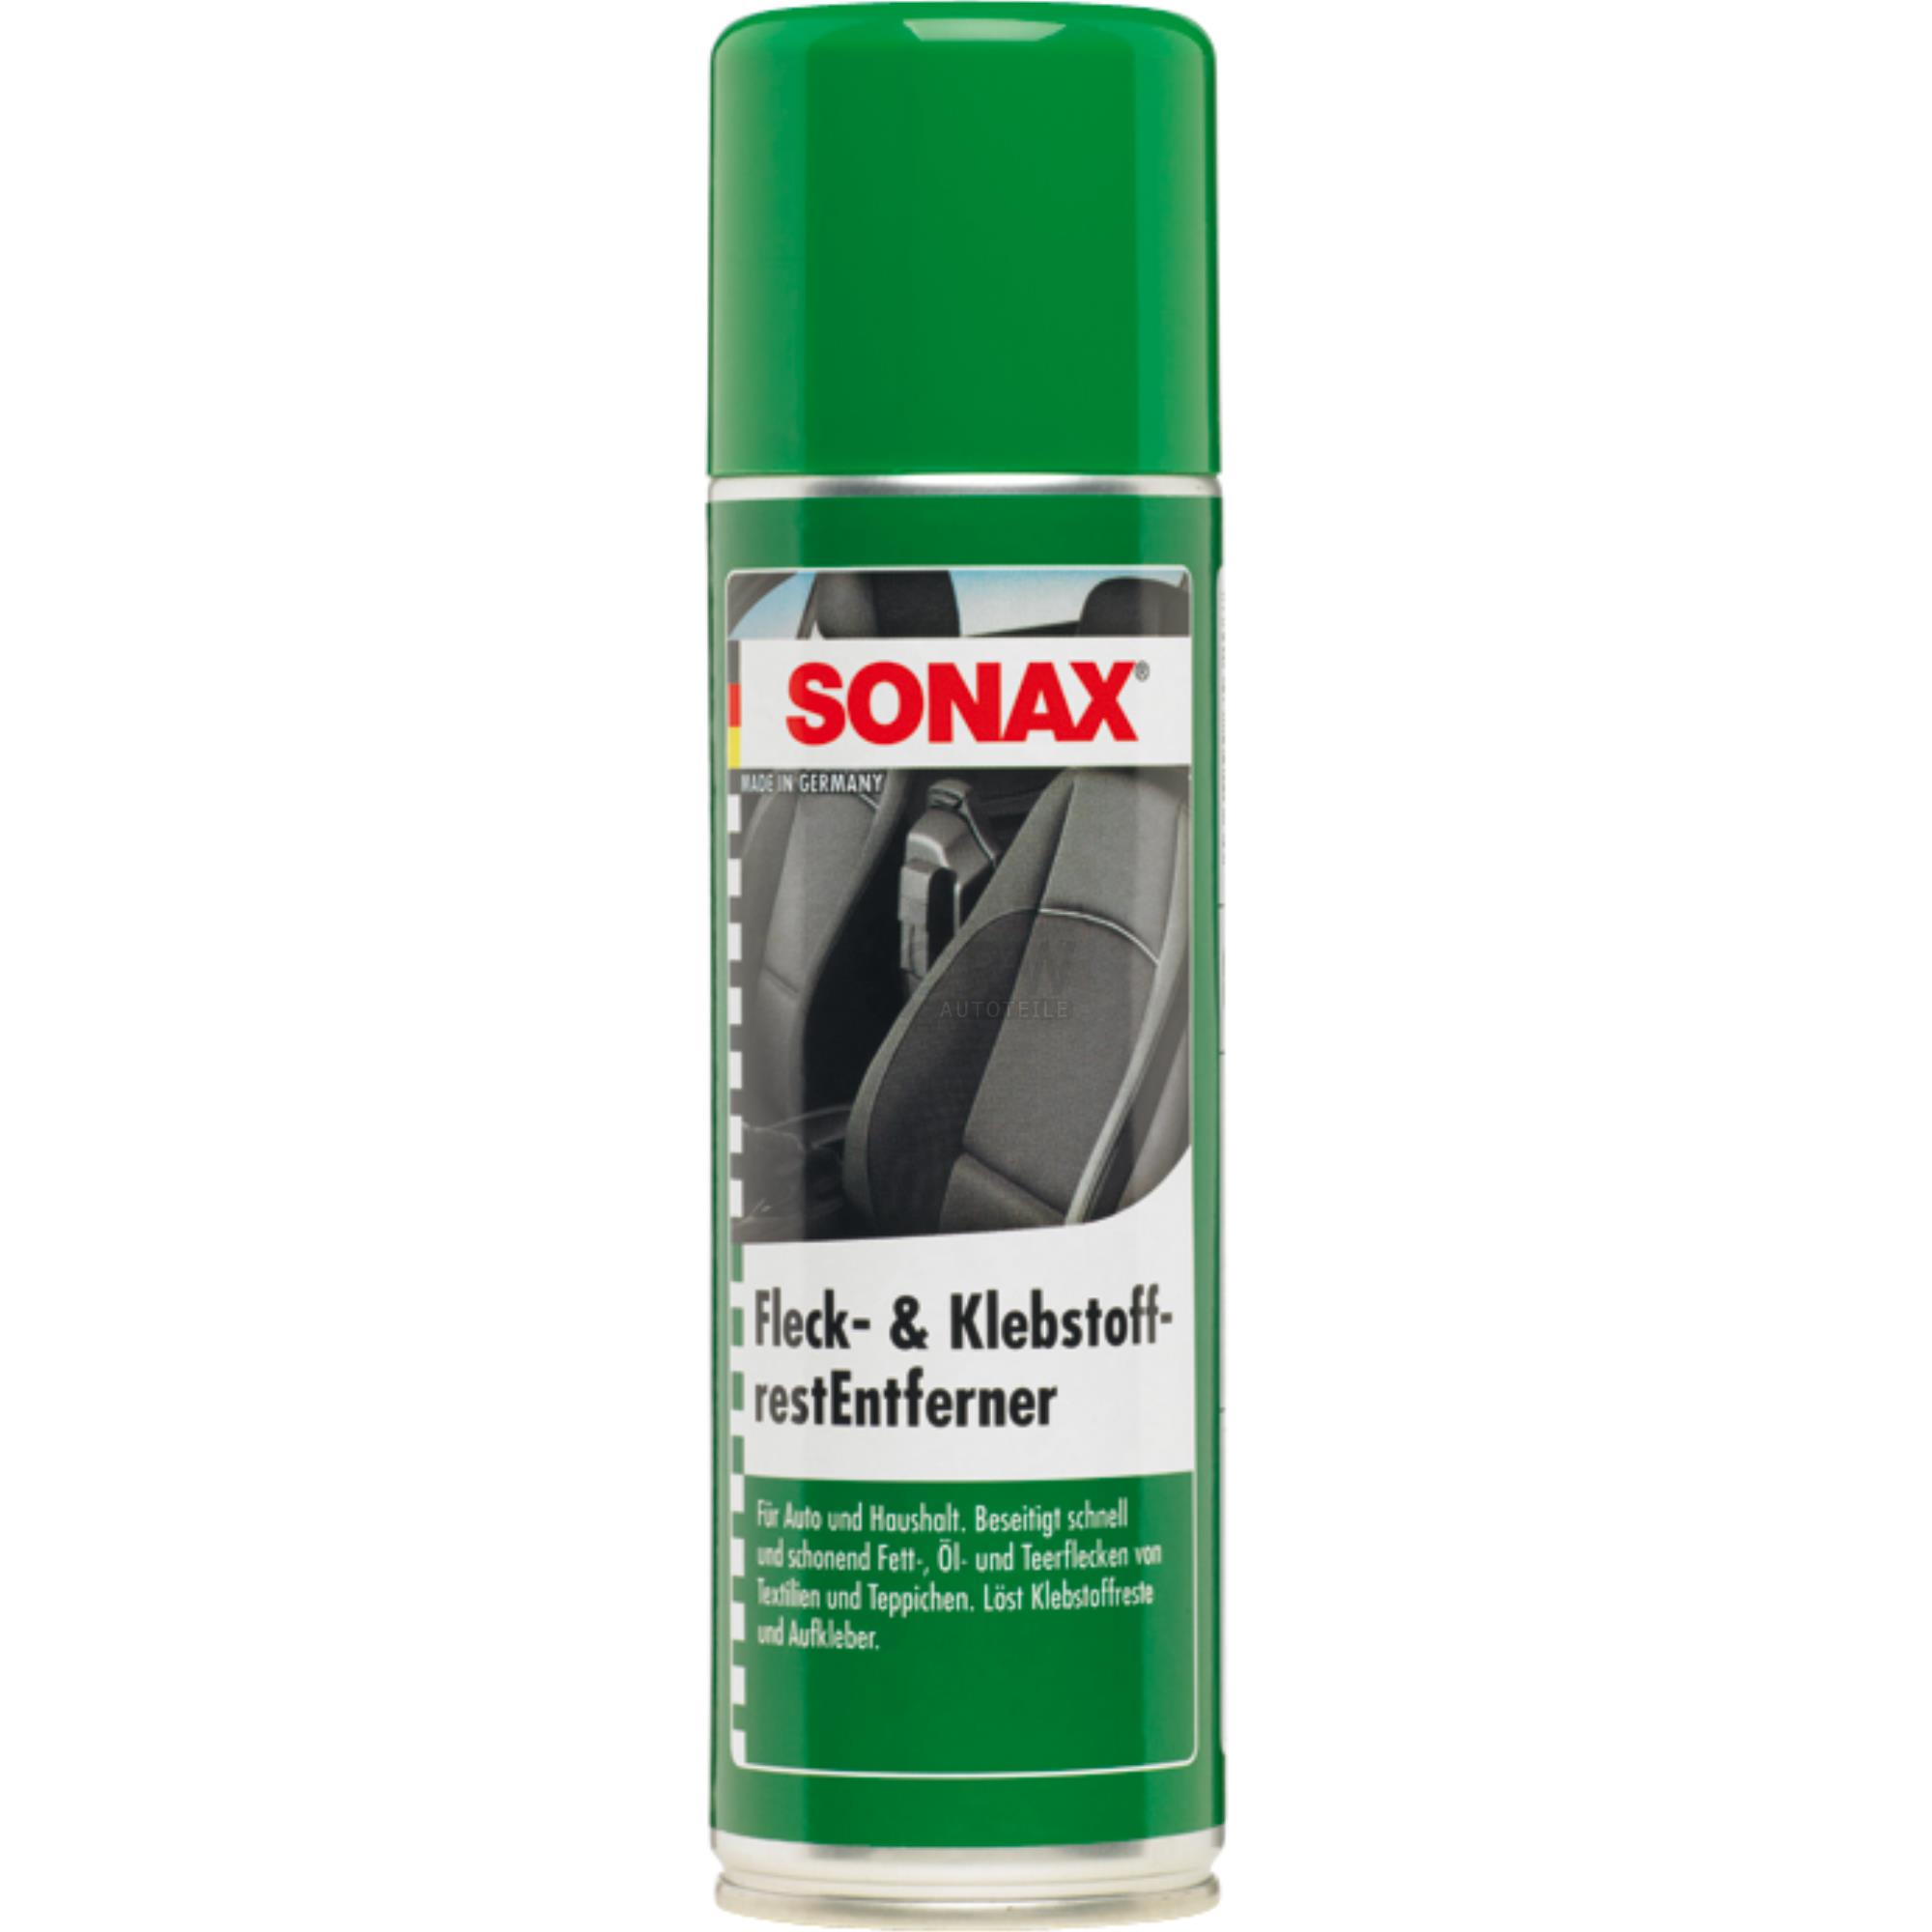 SONAX Fleck- & KlebstoffrestEntferner für Aufkleberentferner 300 ml